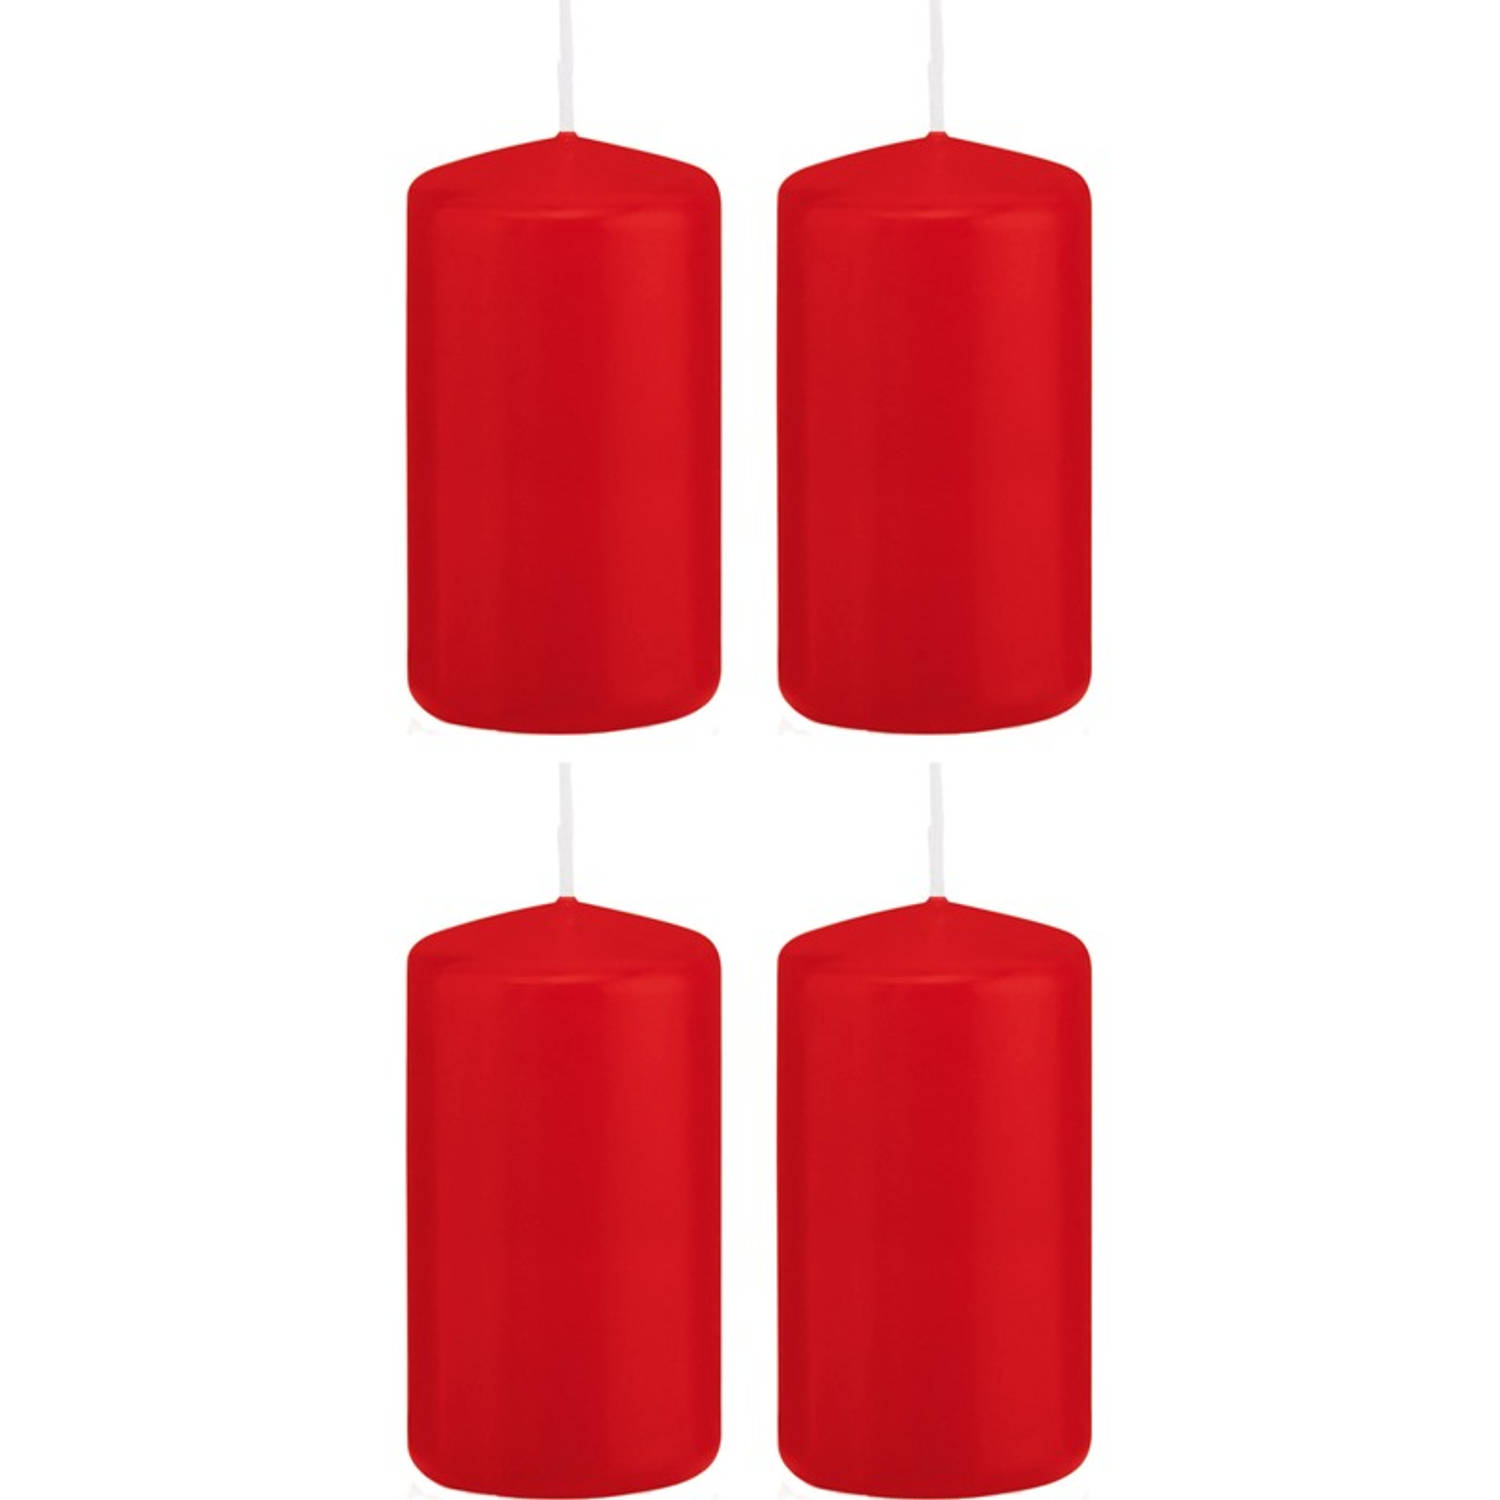 Trend Candles 4x Rode Cilinderkaarsen/stompkaarsen 6 X 12 Cm 40 Branduren - Geurloze Kaarsen - Woondecoraties - Rood